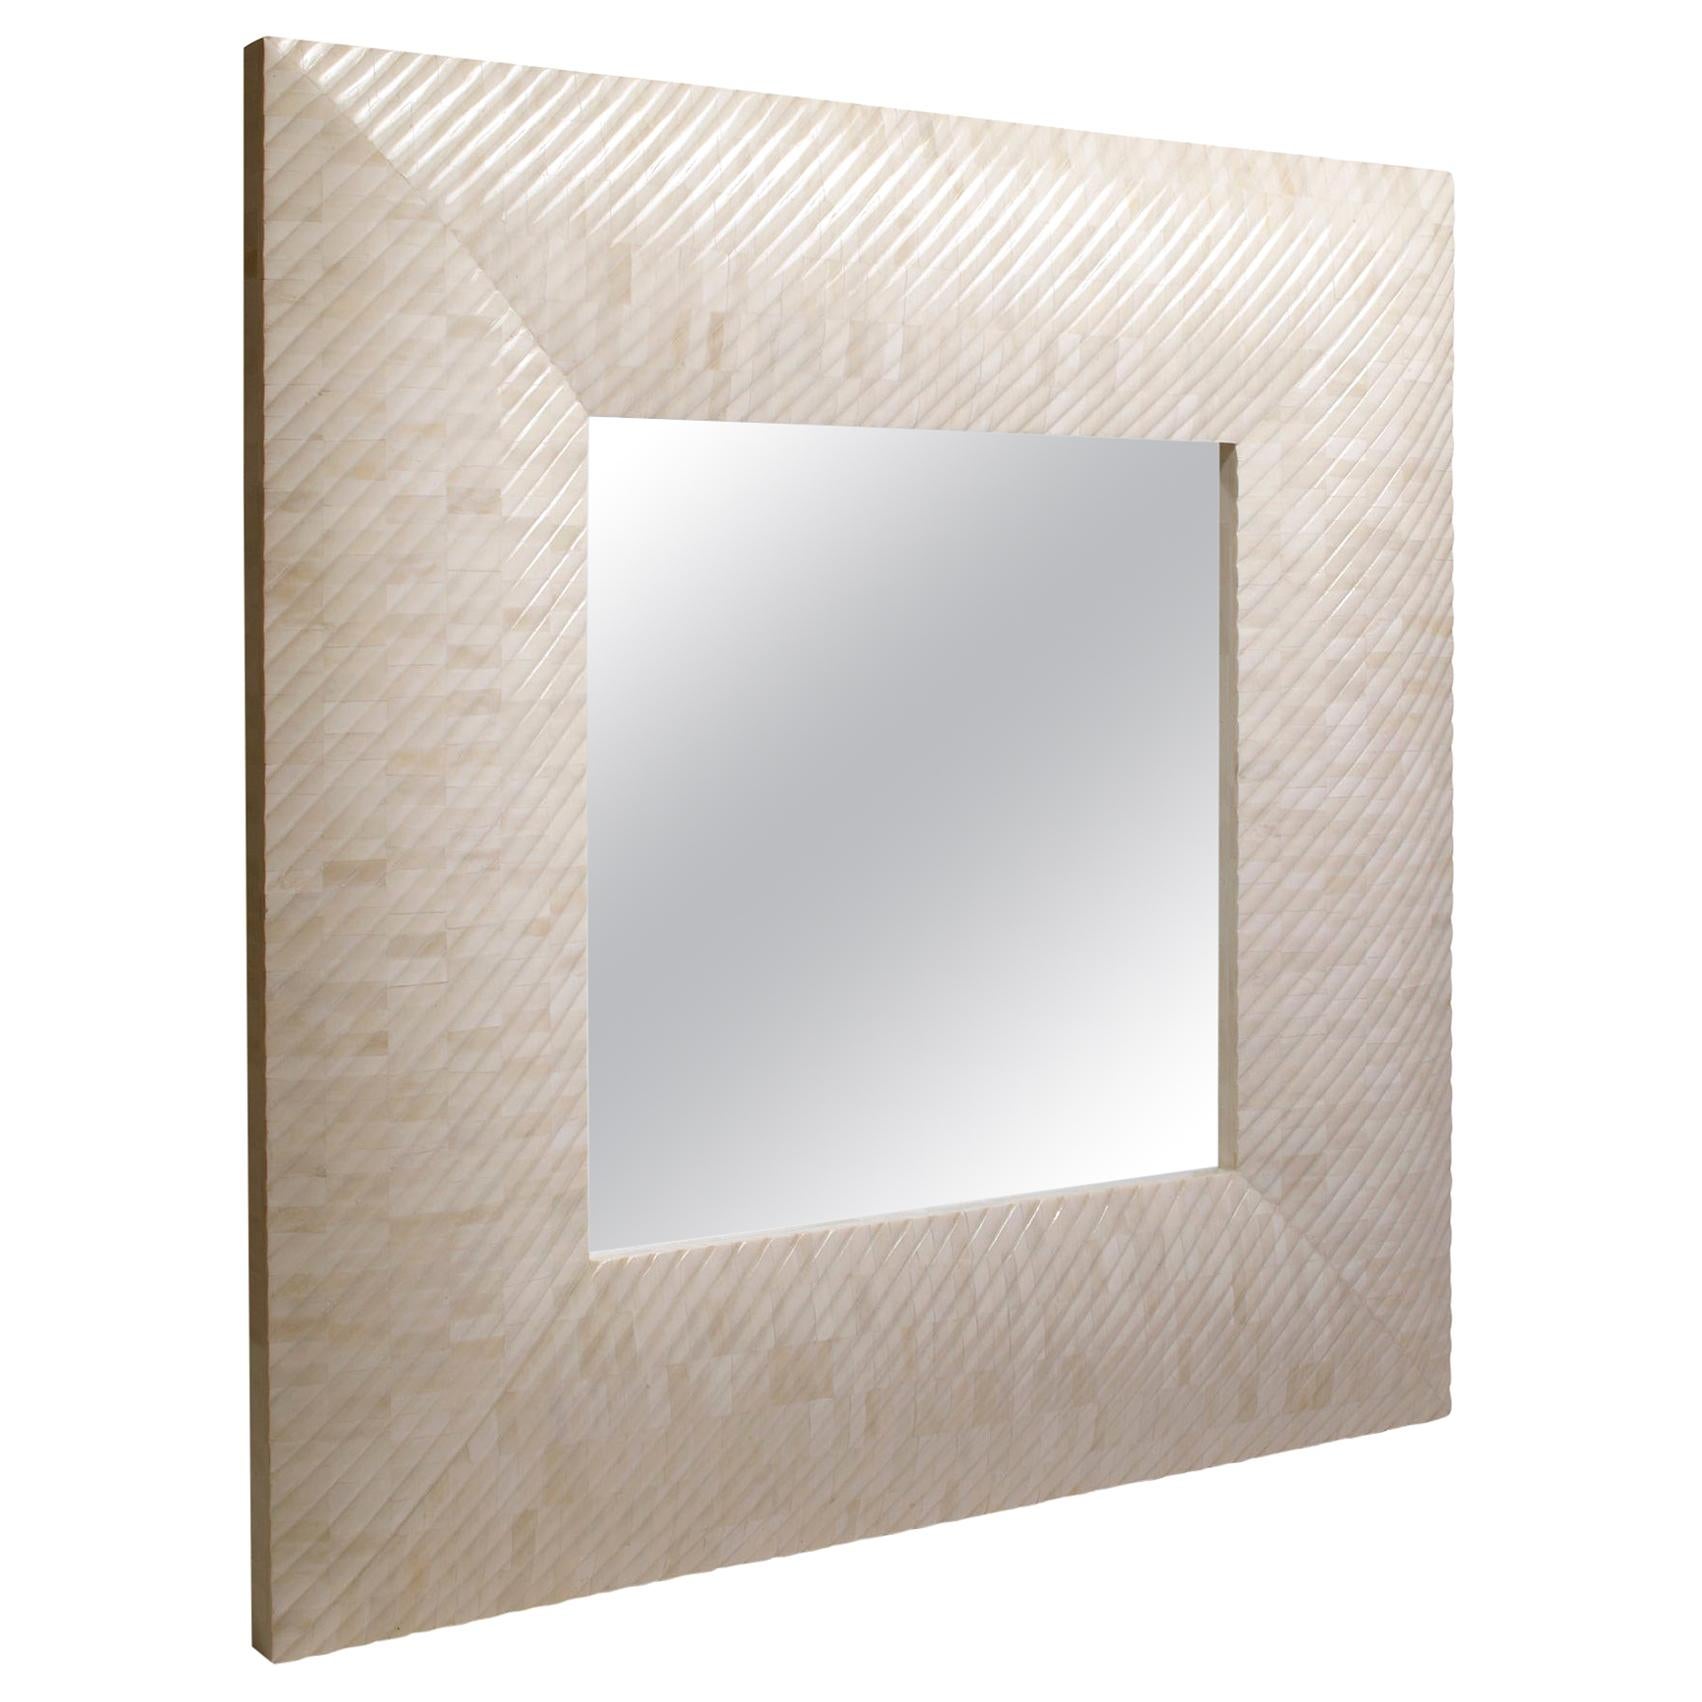 Miroir carré en stock fabriqué avec du os sculpté, miroir Aspire